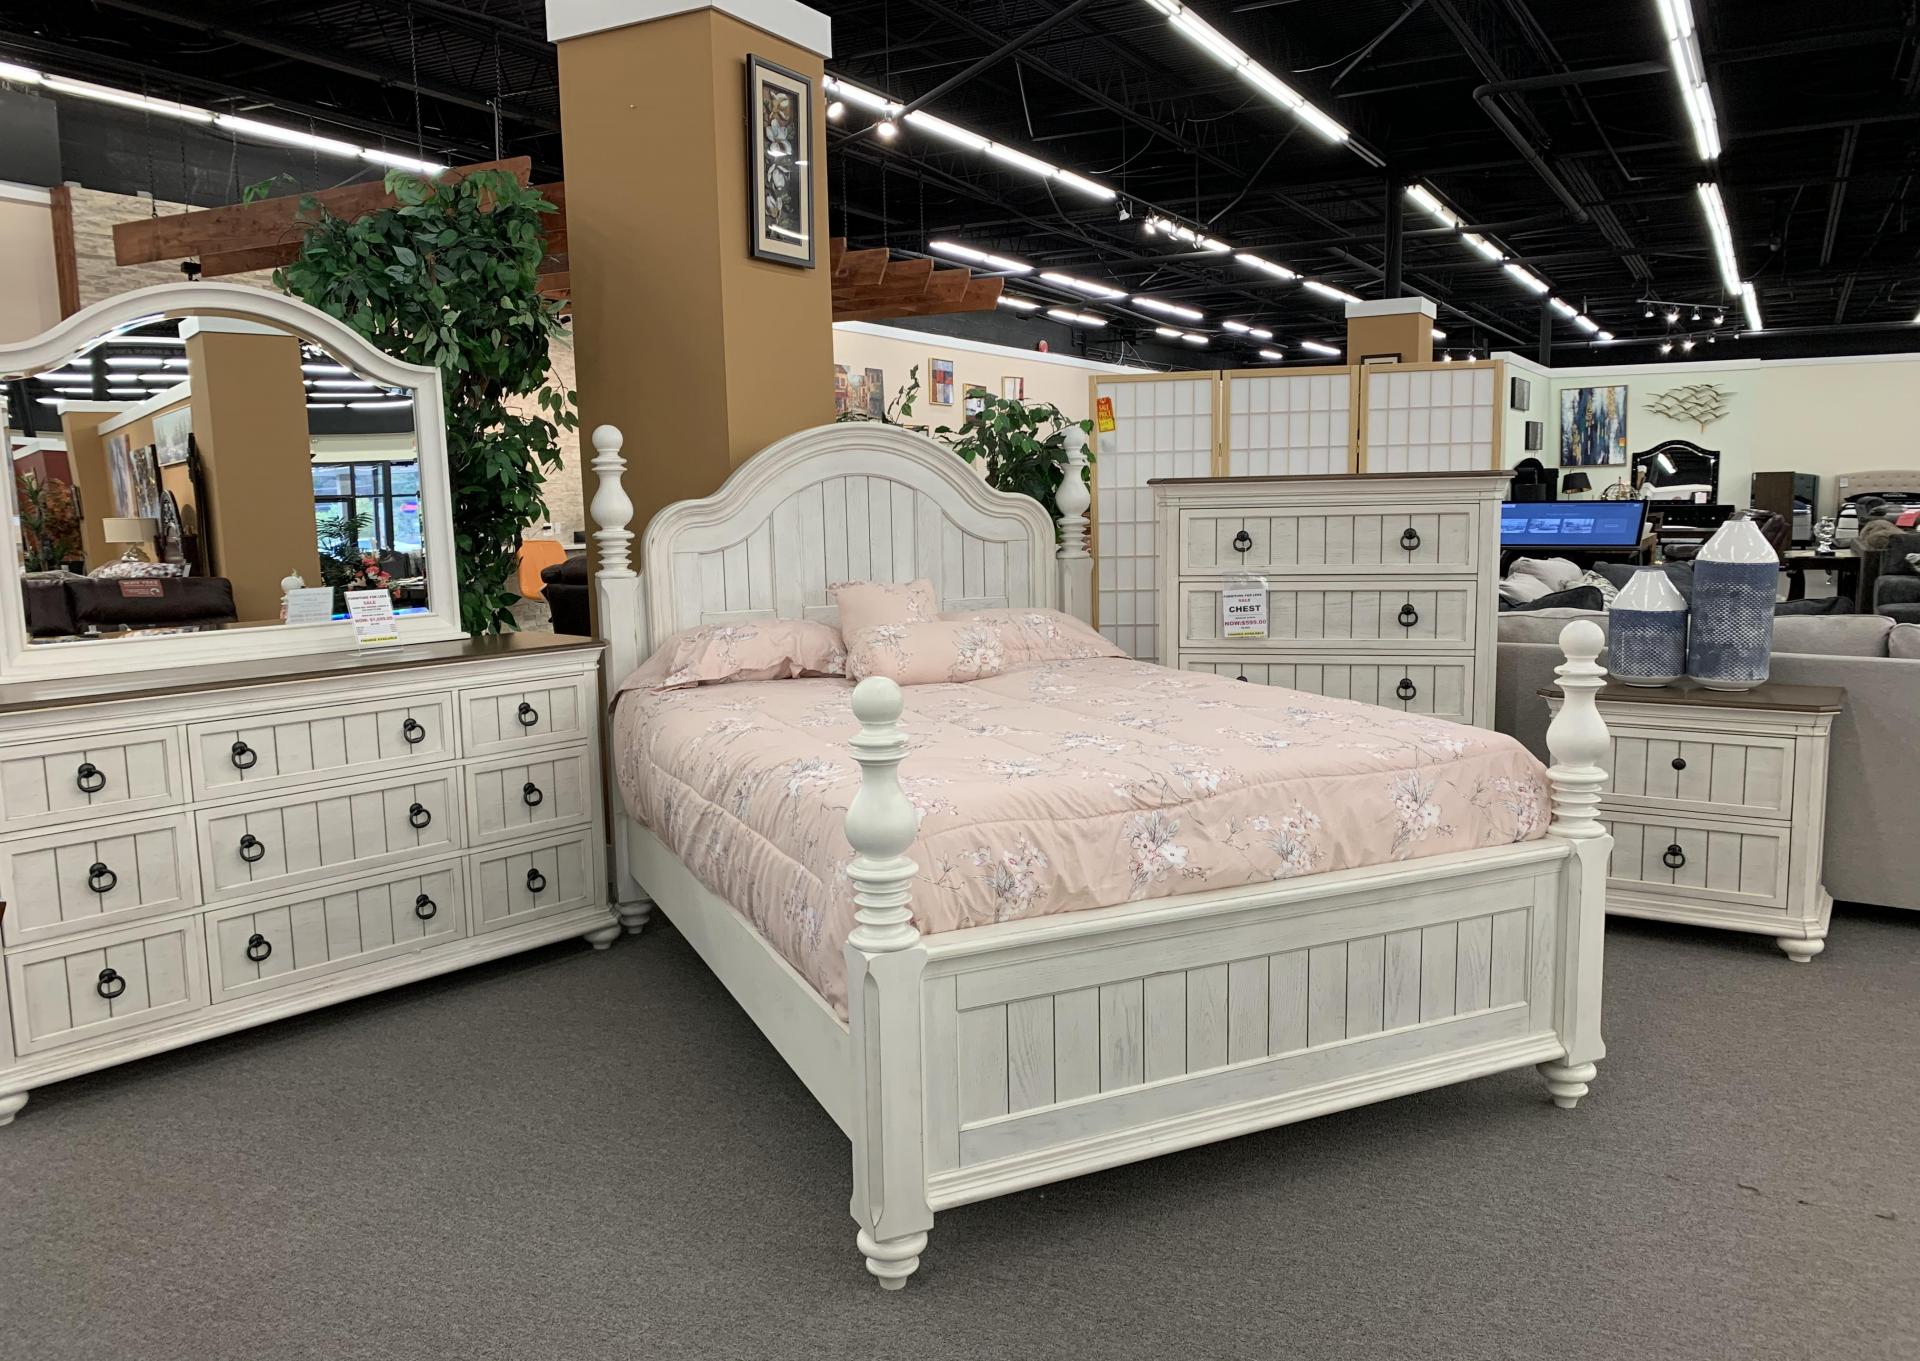 4 Piece Queen bedroom set in white,Store Brand